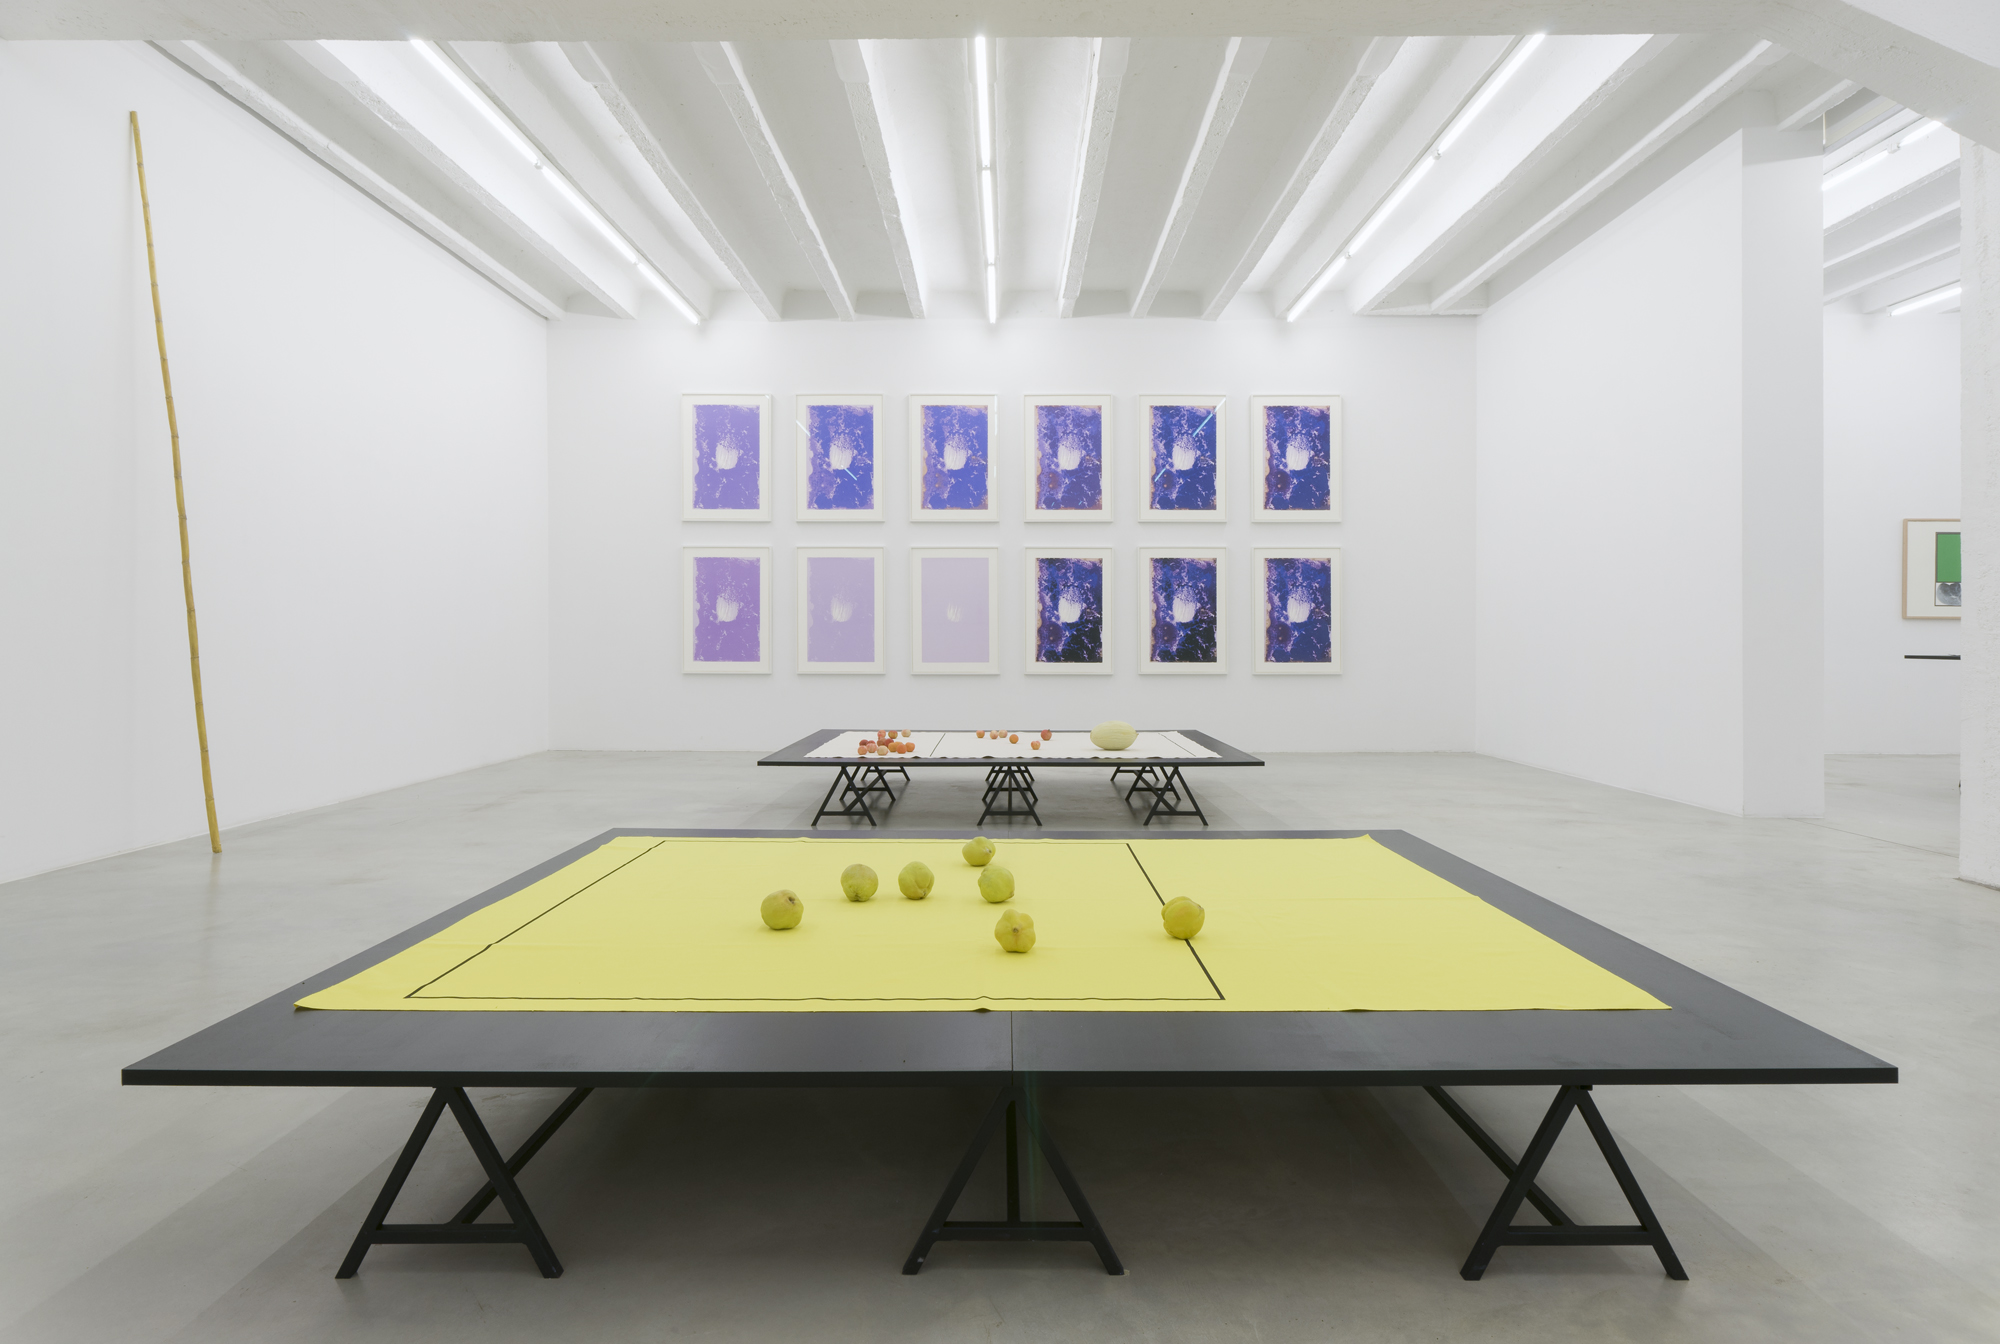 Exhibition view at Galerija Gregor Podnar, Berlin, 2015. Photo: Marcus Schneider